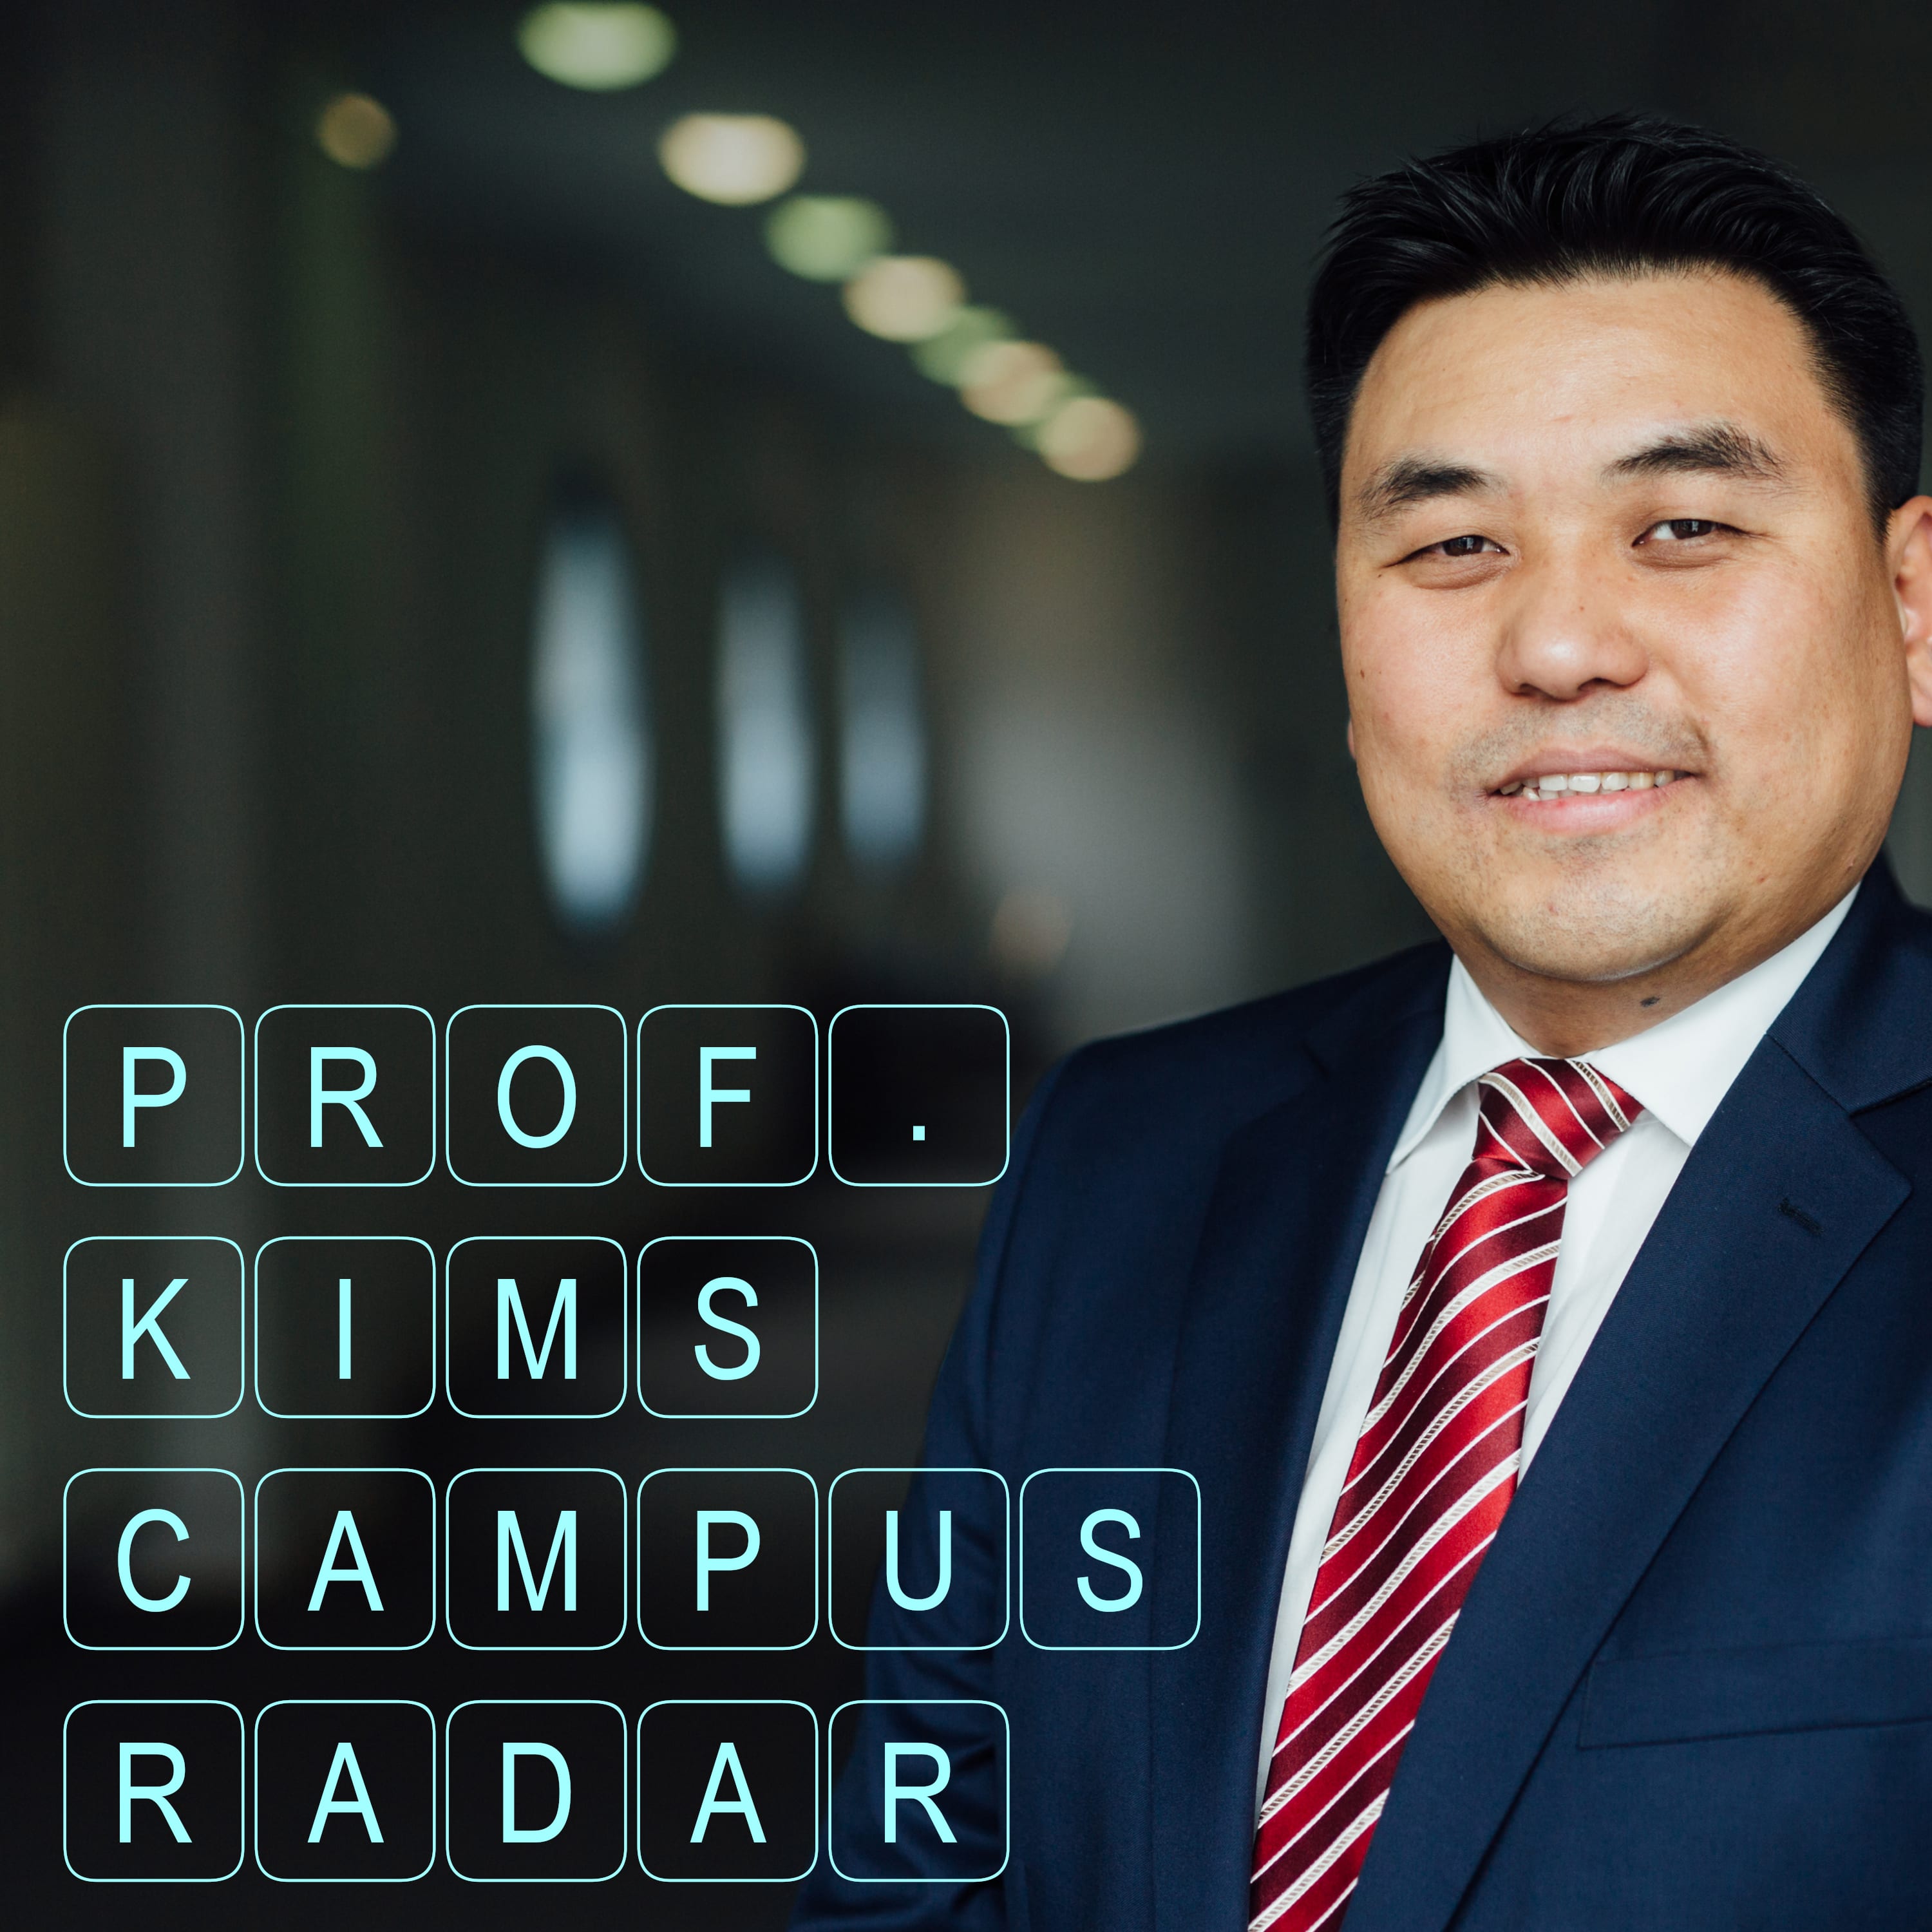 Prof. Kims Campusradar